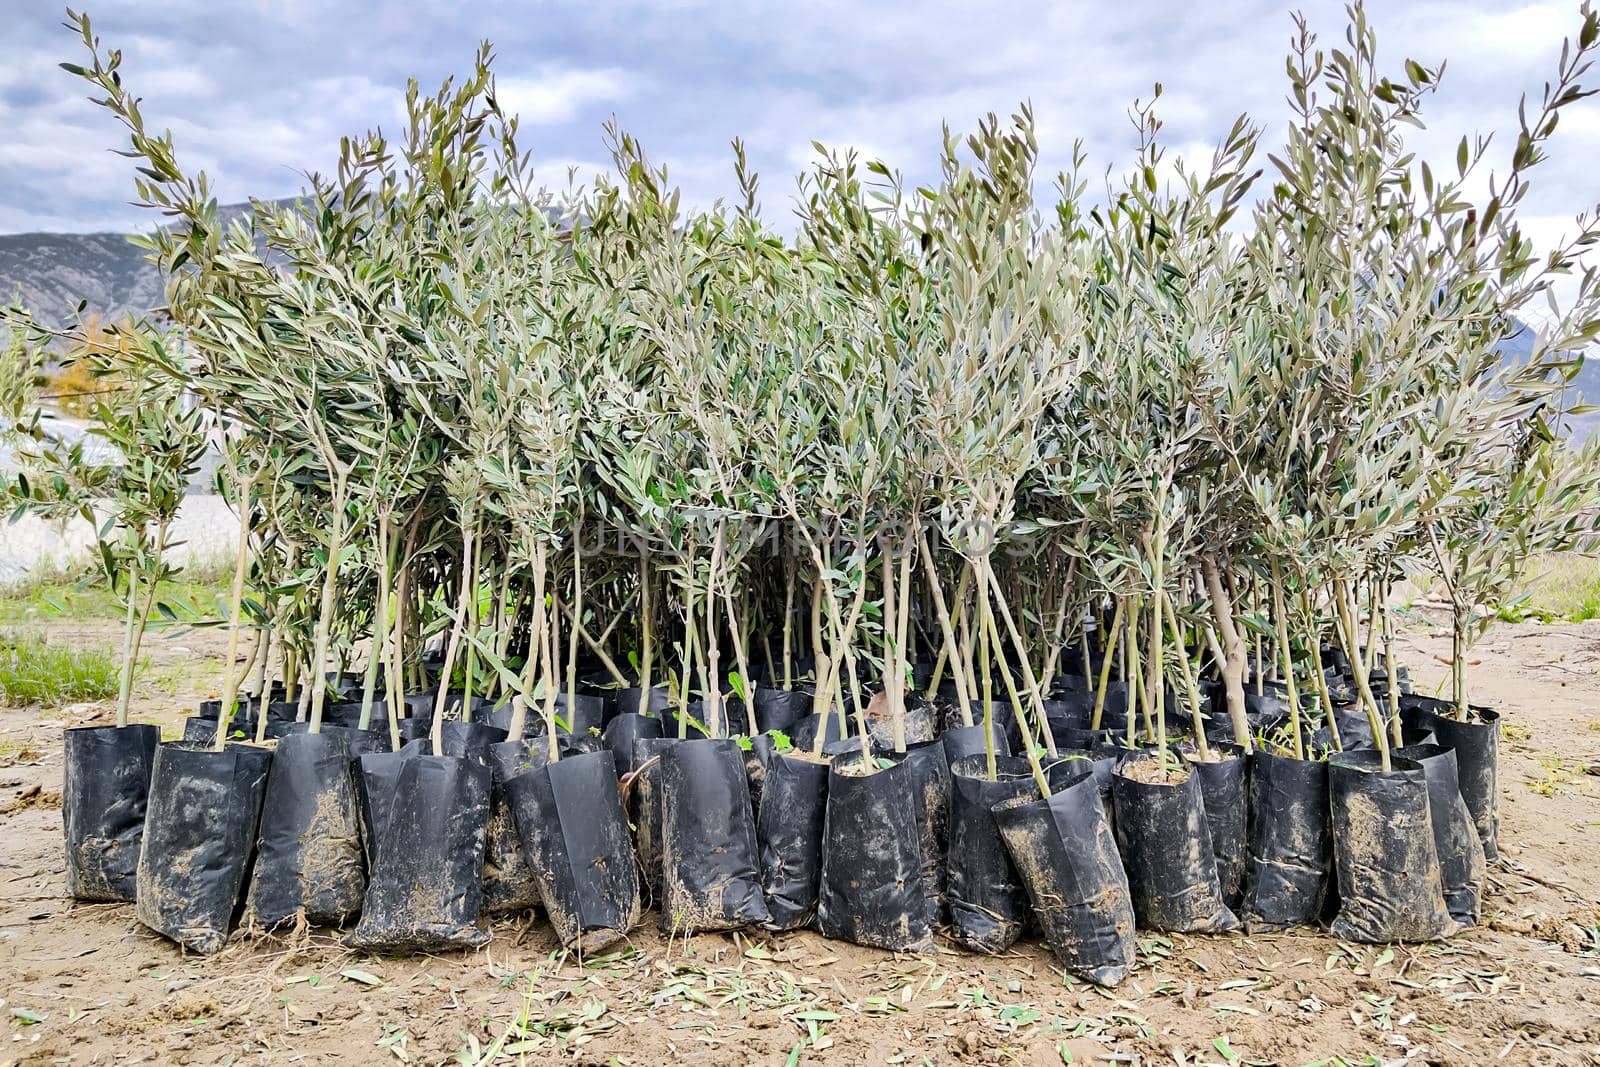 Seedlings of olive trees in plant nursery prepared for sale by Laguna781